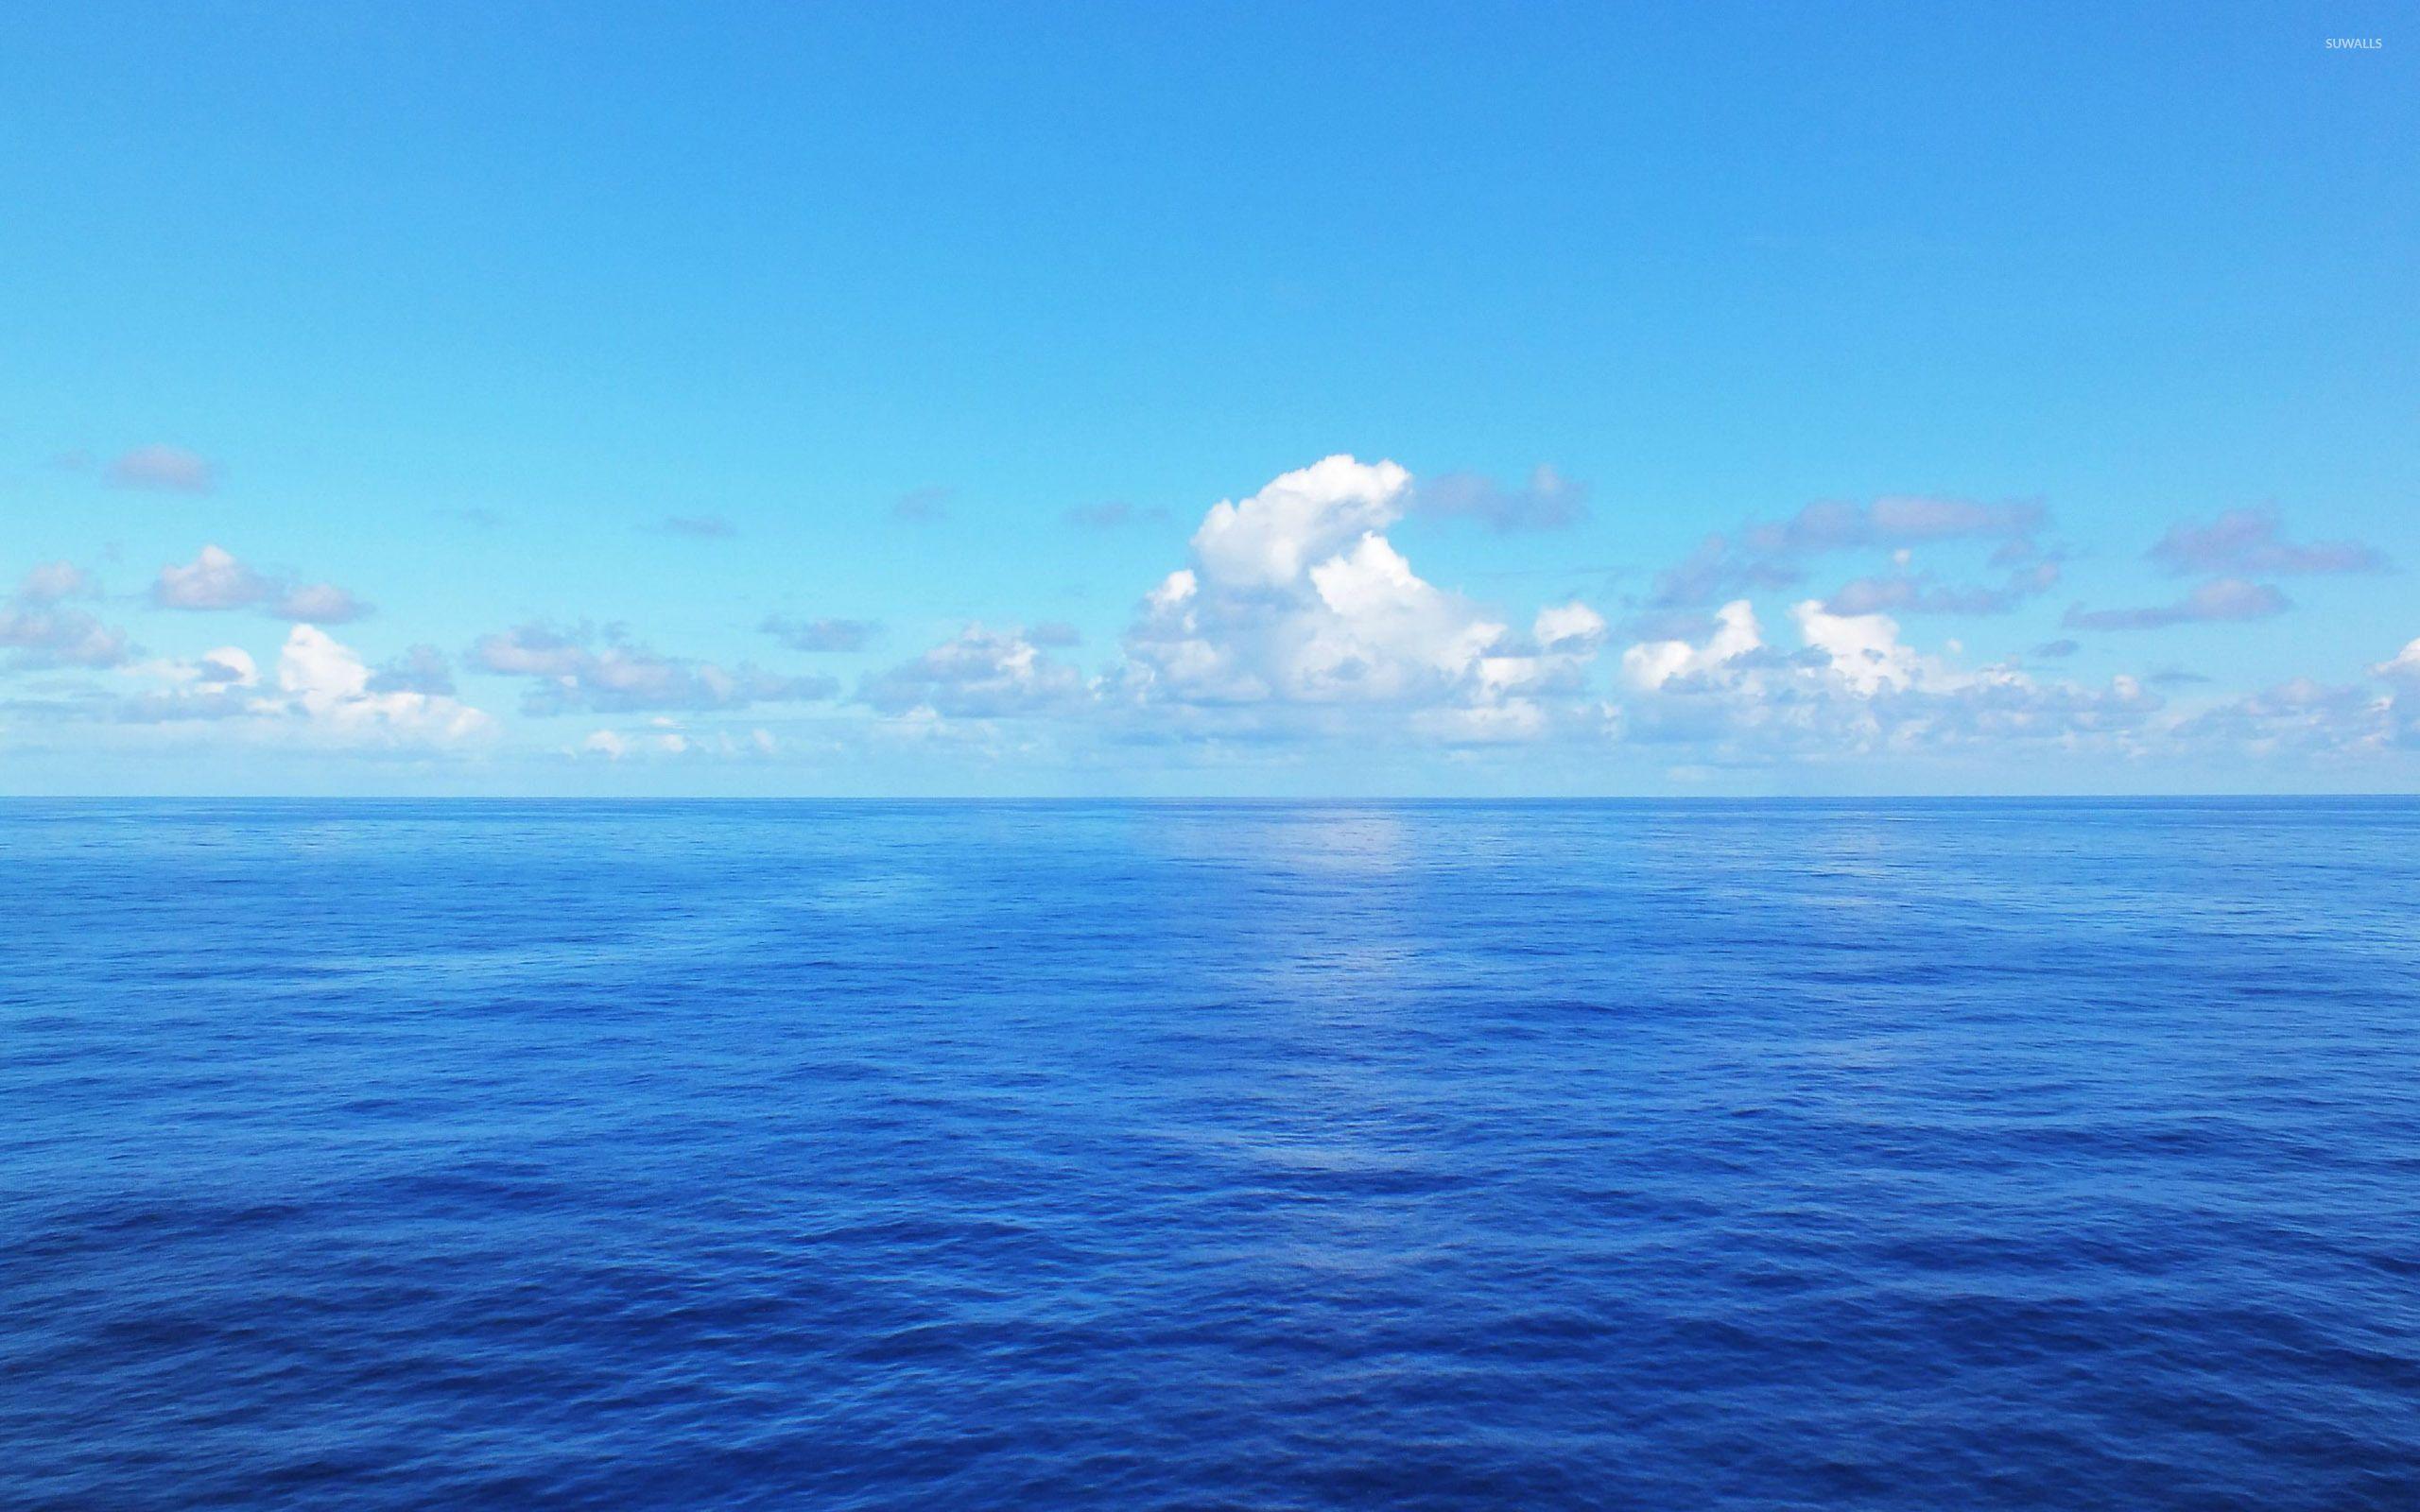 Với hình nền biển xanh tươi thắm, bạn sẽ thấy mình được đưa đến một vùng biển trong xanh và bao la. Hình ảnh này sẽ đem lại cho bạn một cảm giác thư giãn và tĩnh tại trong giây phút mệt mỏi sau một ngày làm việc vất vả.